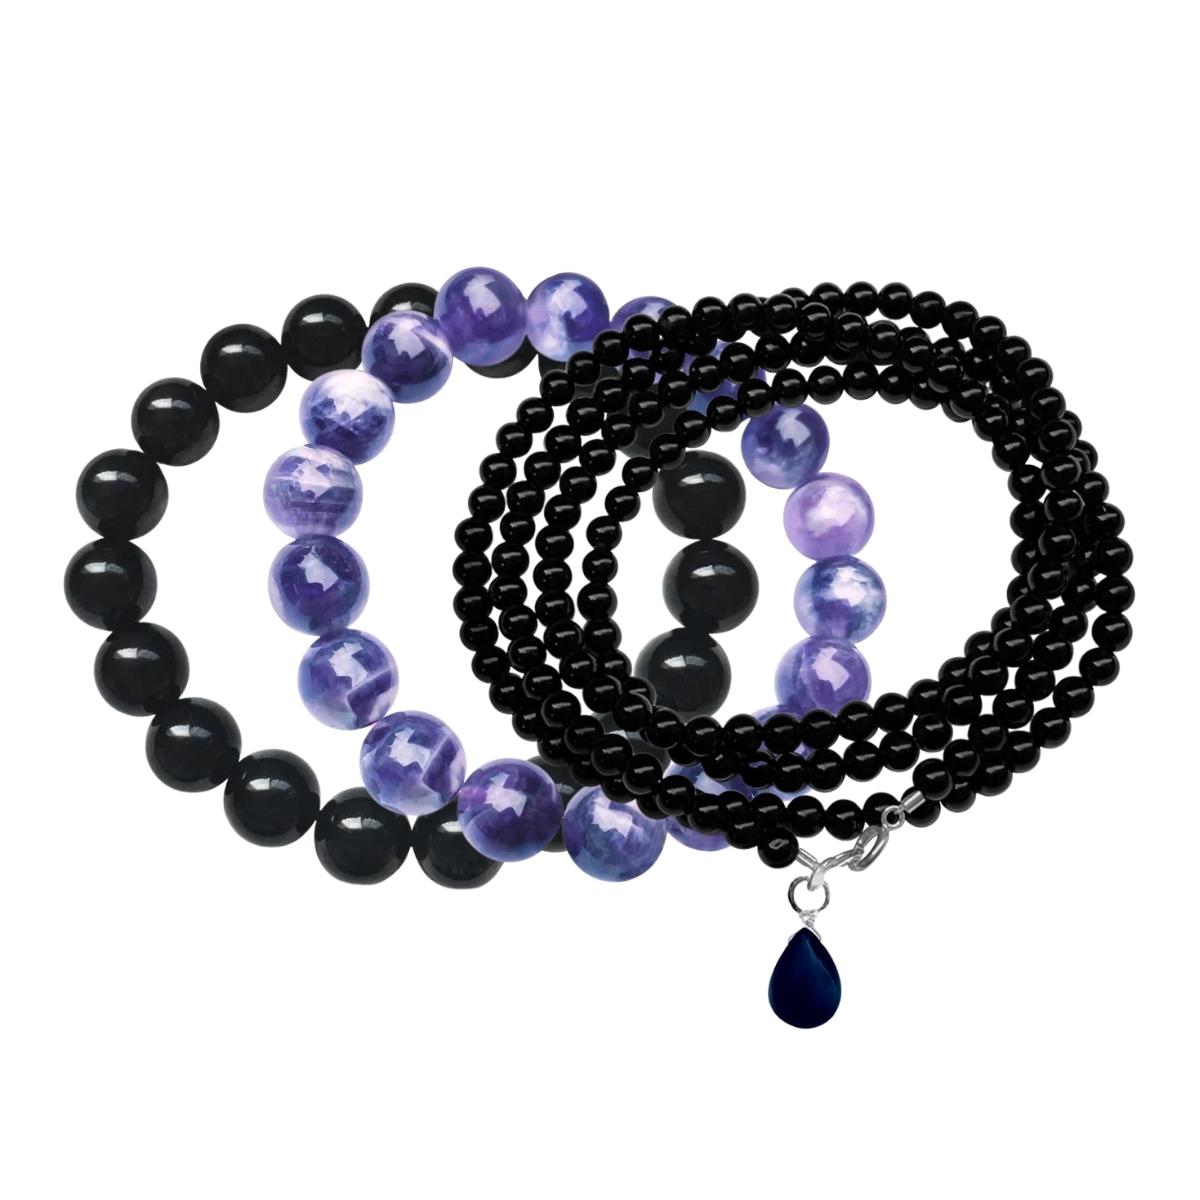 Wear the Leo Zodiac Gemstone Bracelet Set to feel the Leo energies!